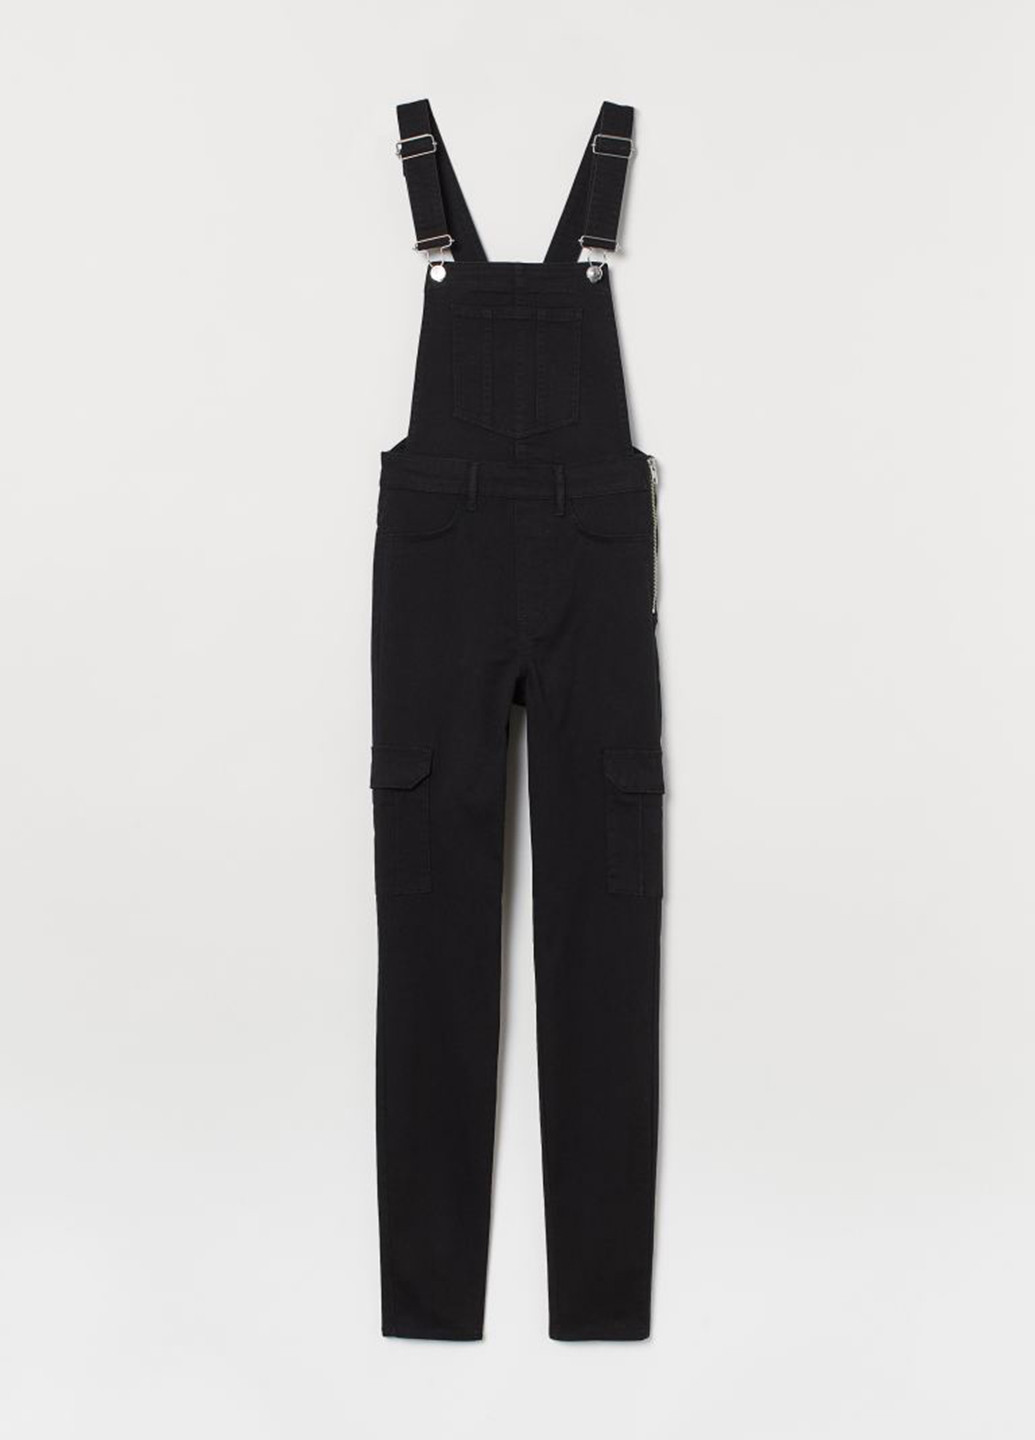 Комбинезон H&M комбинезон-брюки однотонный чёрный денил хлопок